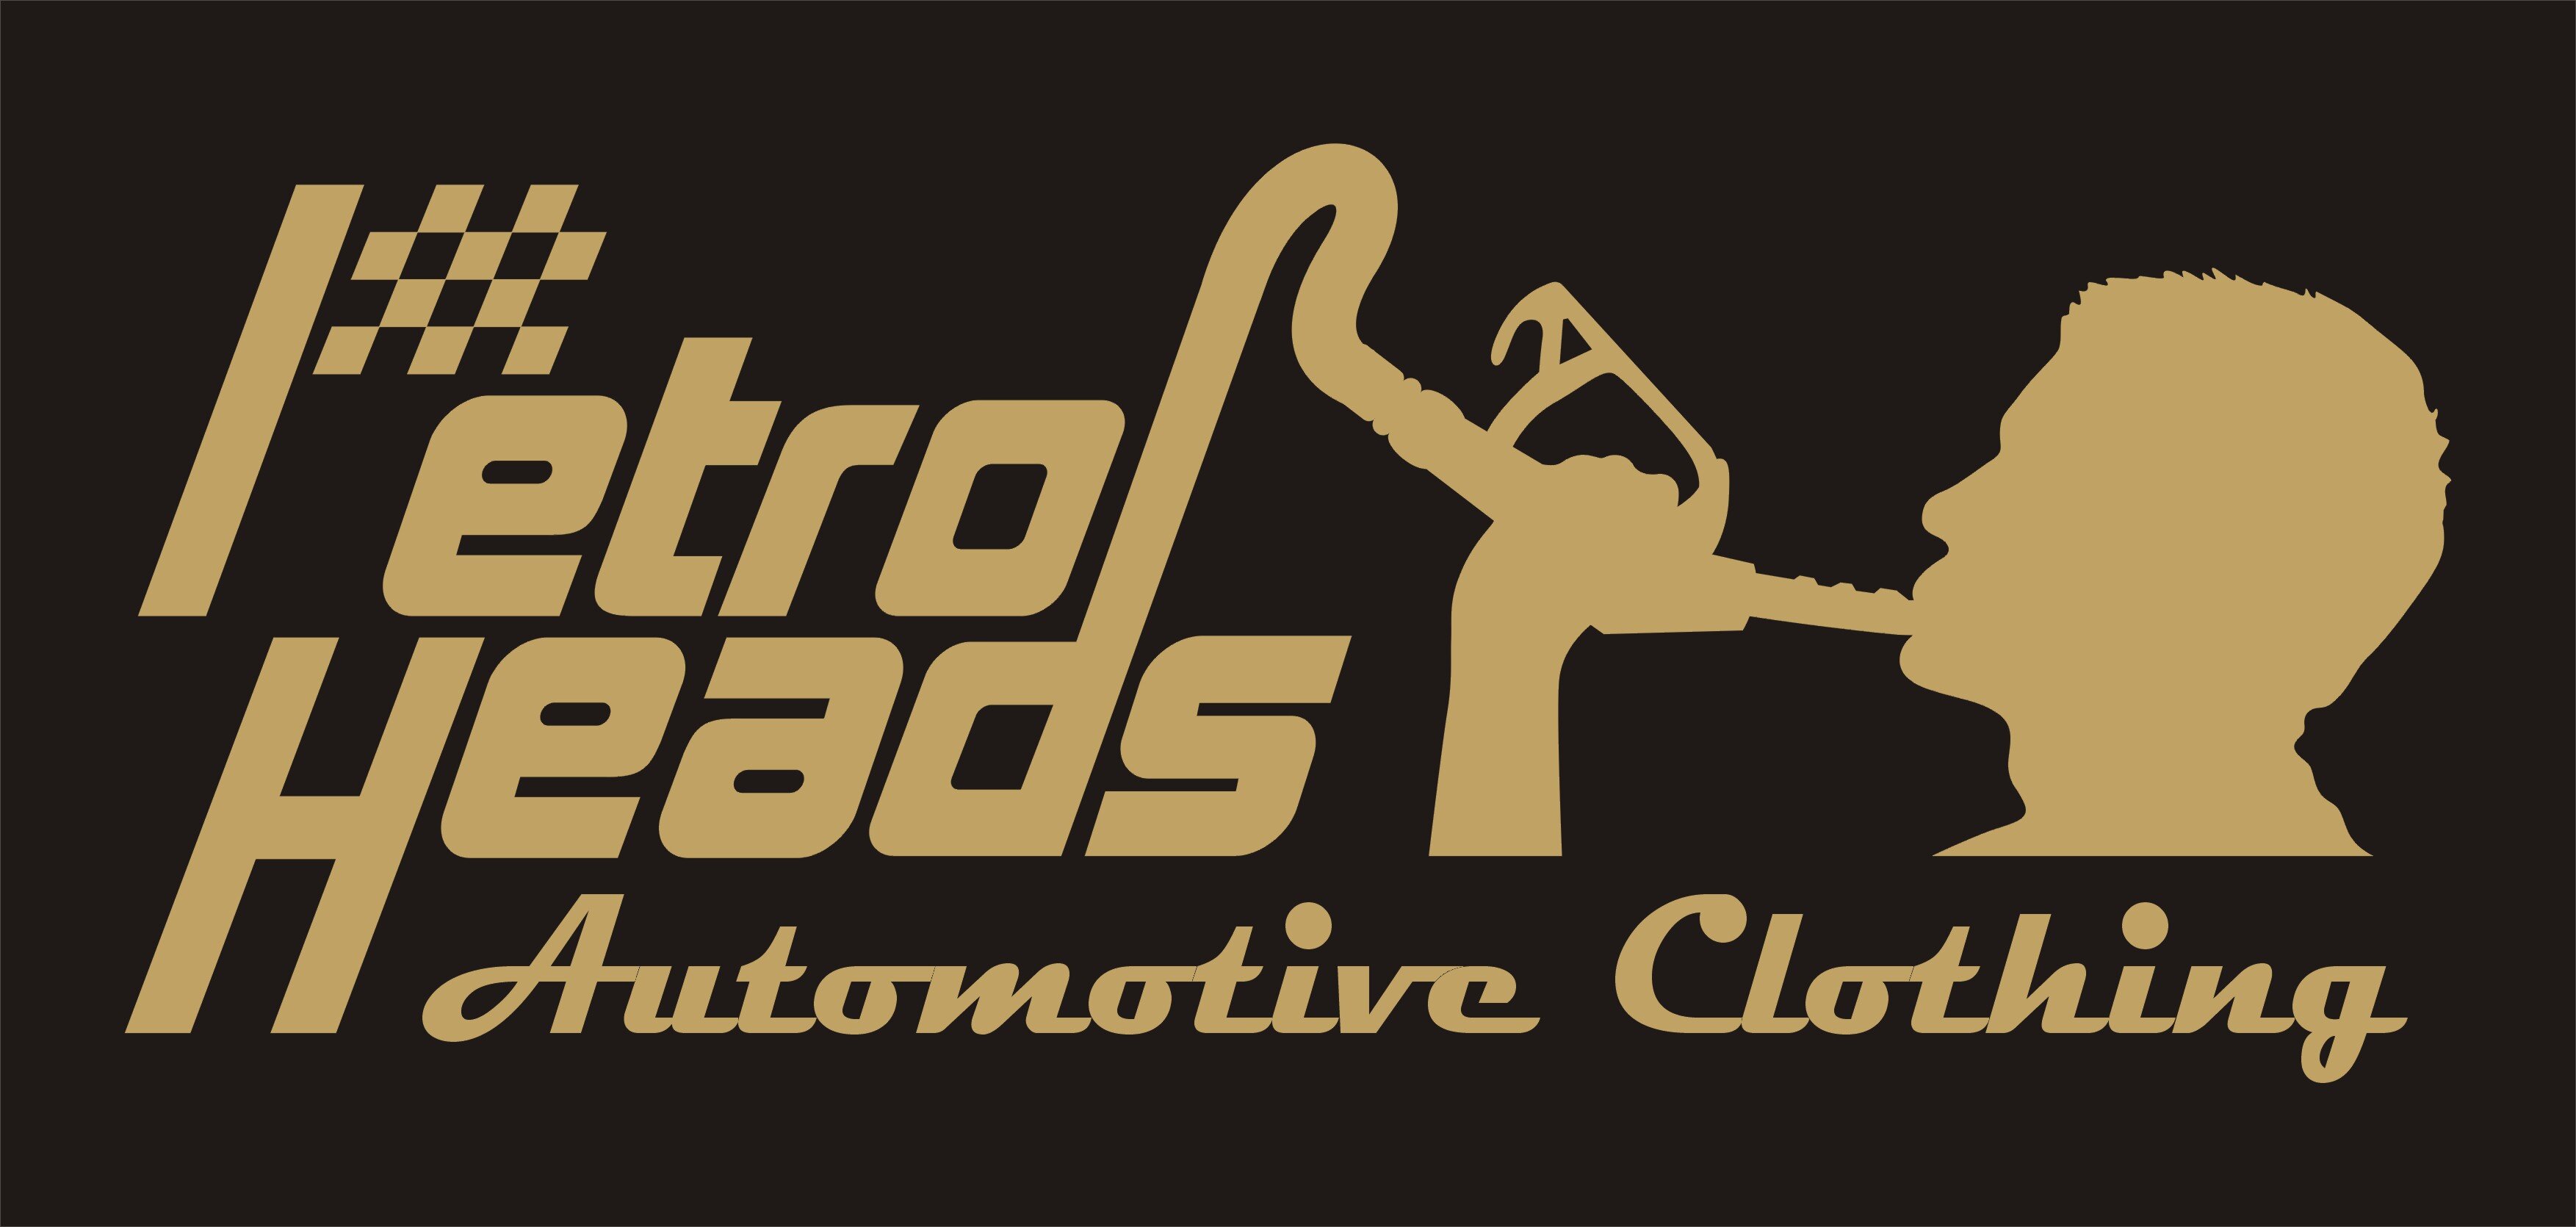 PetrolHeads Automotive Clothing.